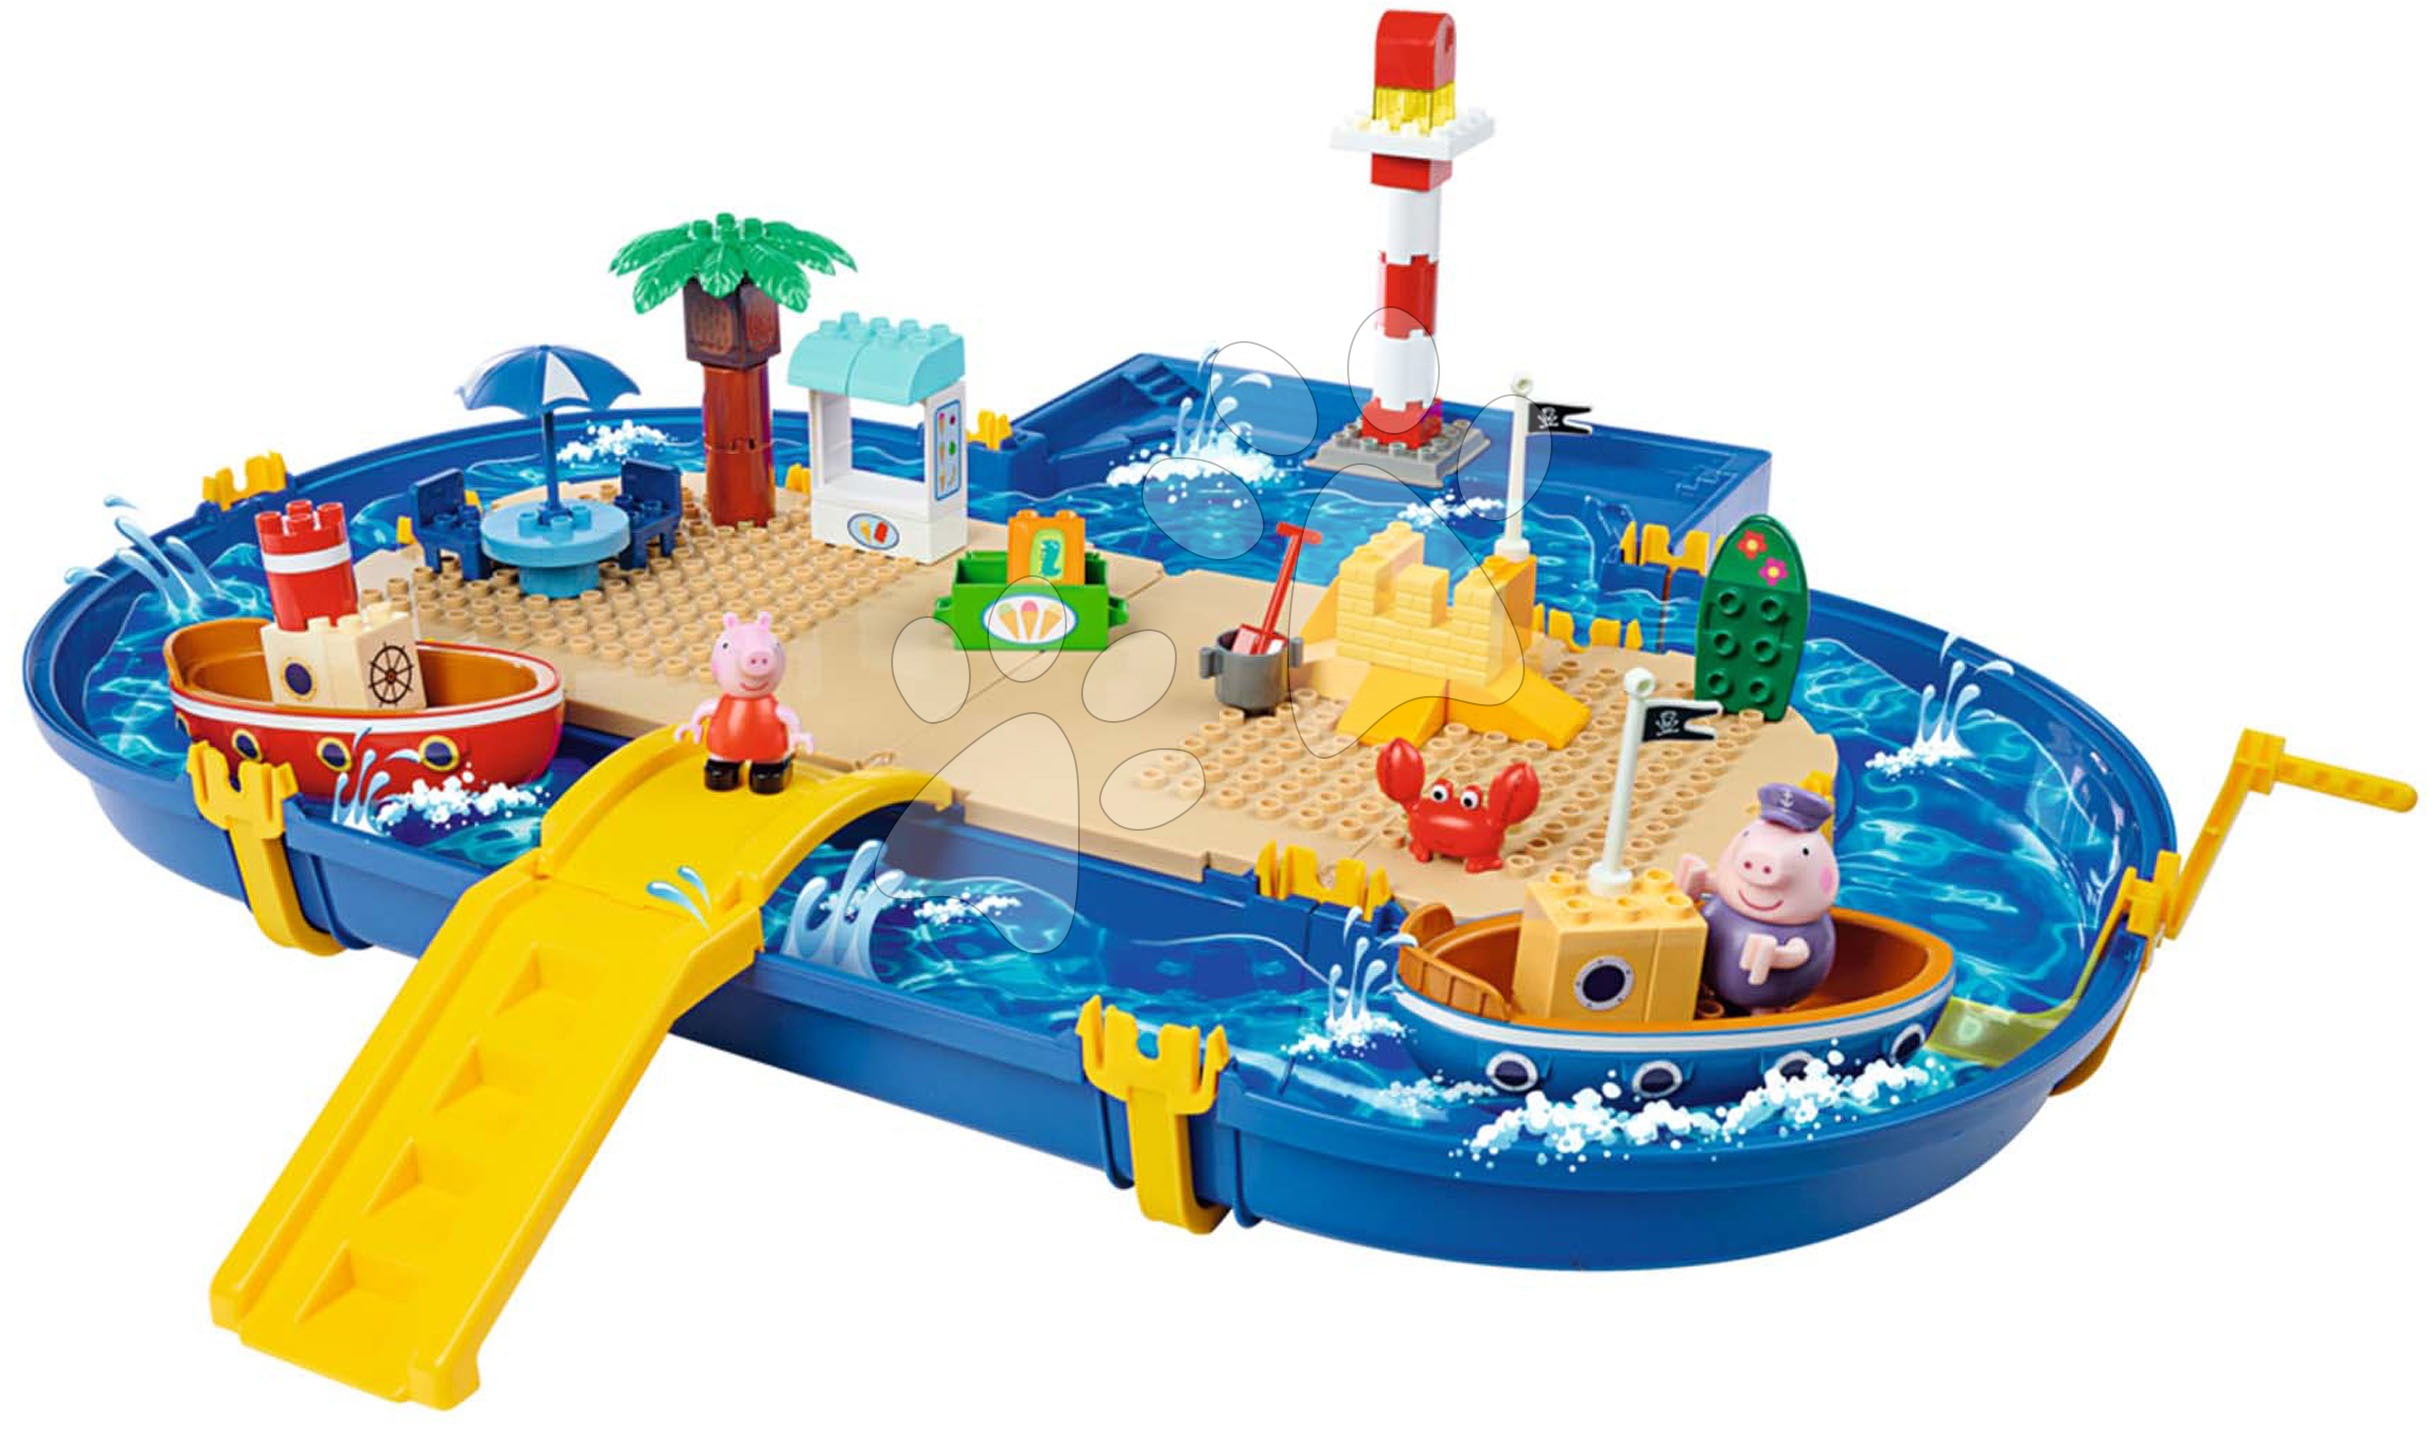 Vodne steze za otroke - Vodna steza Peppa Pig Holiday Waterplay Big z 2 ladjicama in 3 figuricami 71 delov - kompatibilno z Duplom